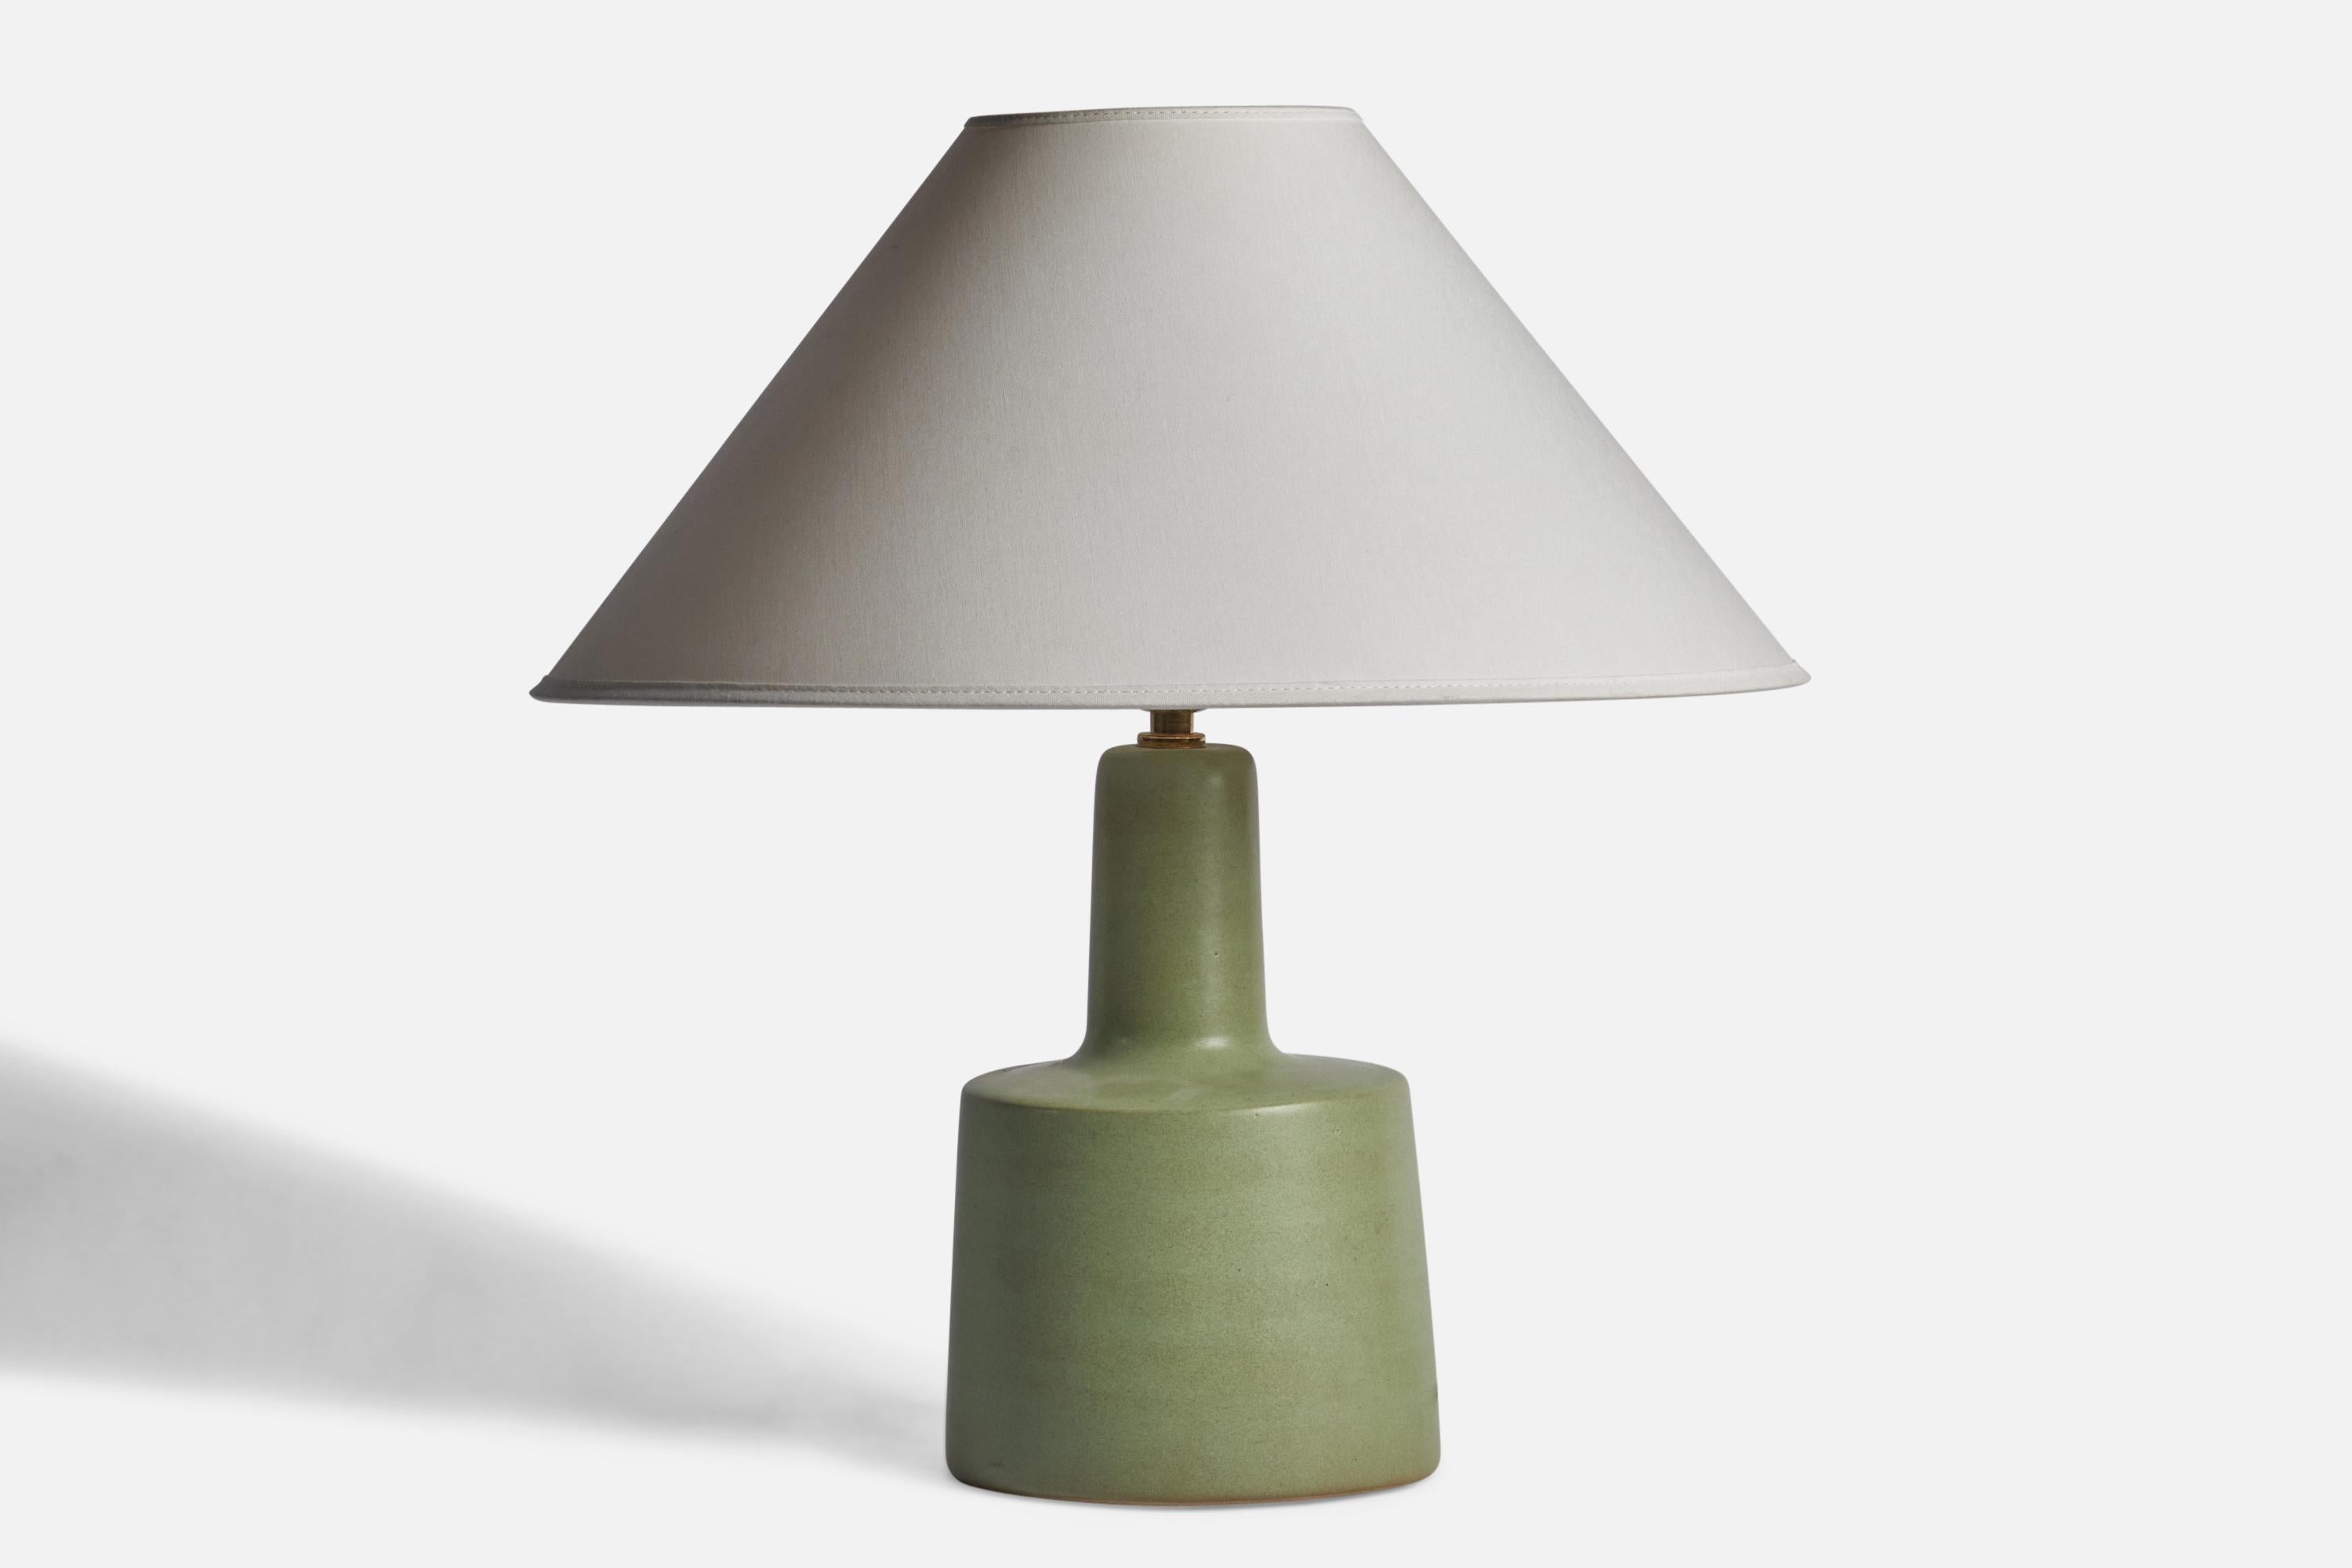 Lampe de table en céramique émaillée verte conçue par Jane & Gordon Martz et produite par Marshall Studios, États-Unis, années 1960.

Dimensions de la lampe (pouces) : 12.25